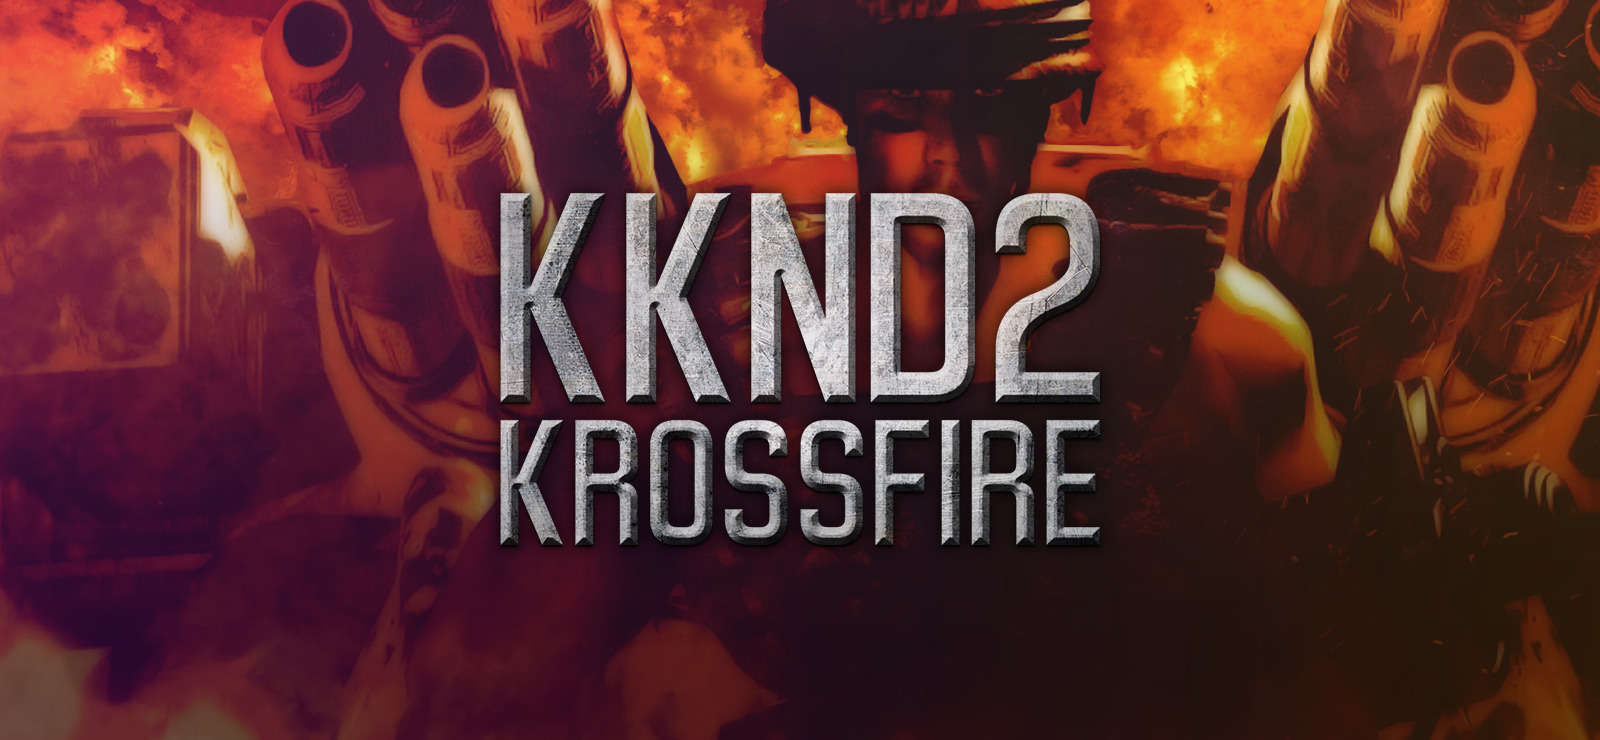 kknd 2 krossfire download windows 10